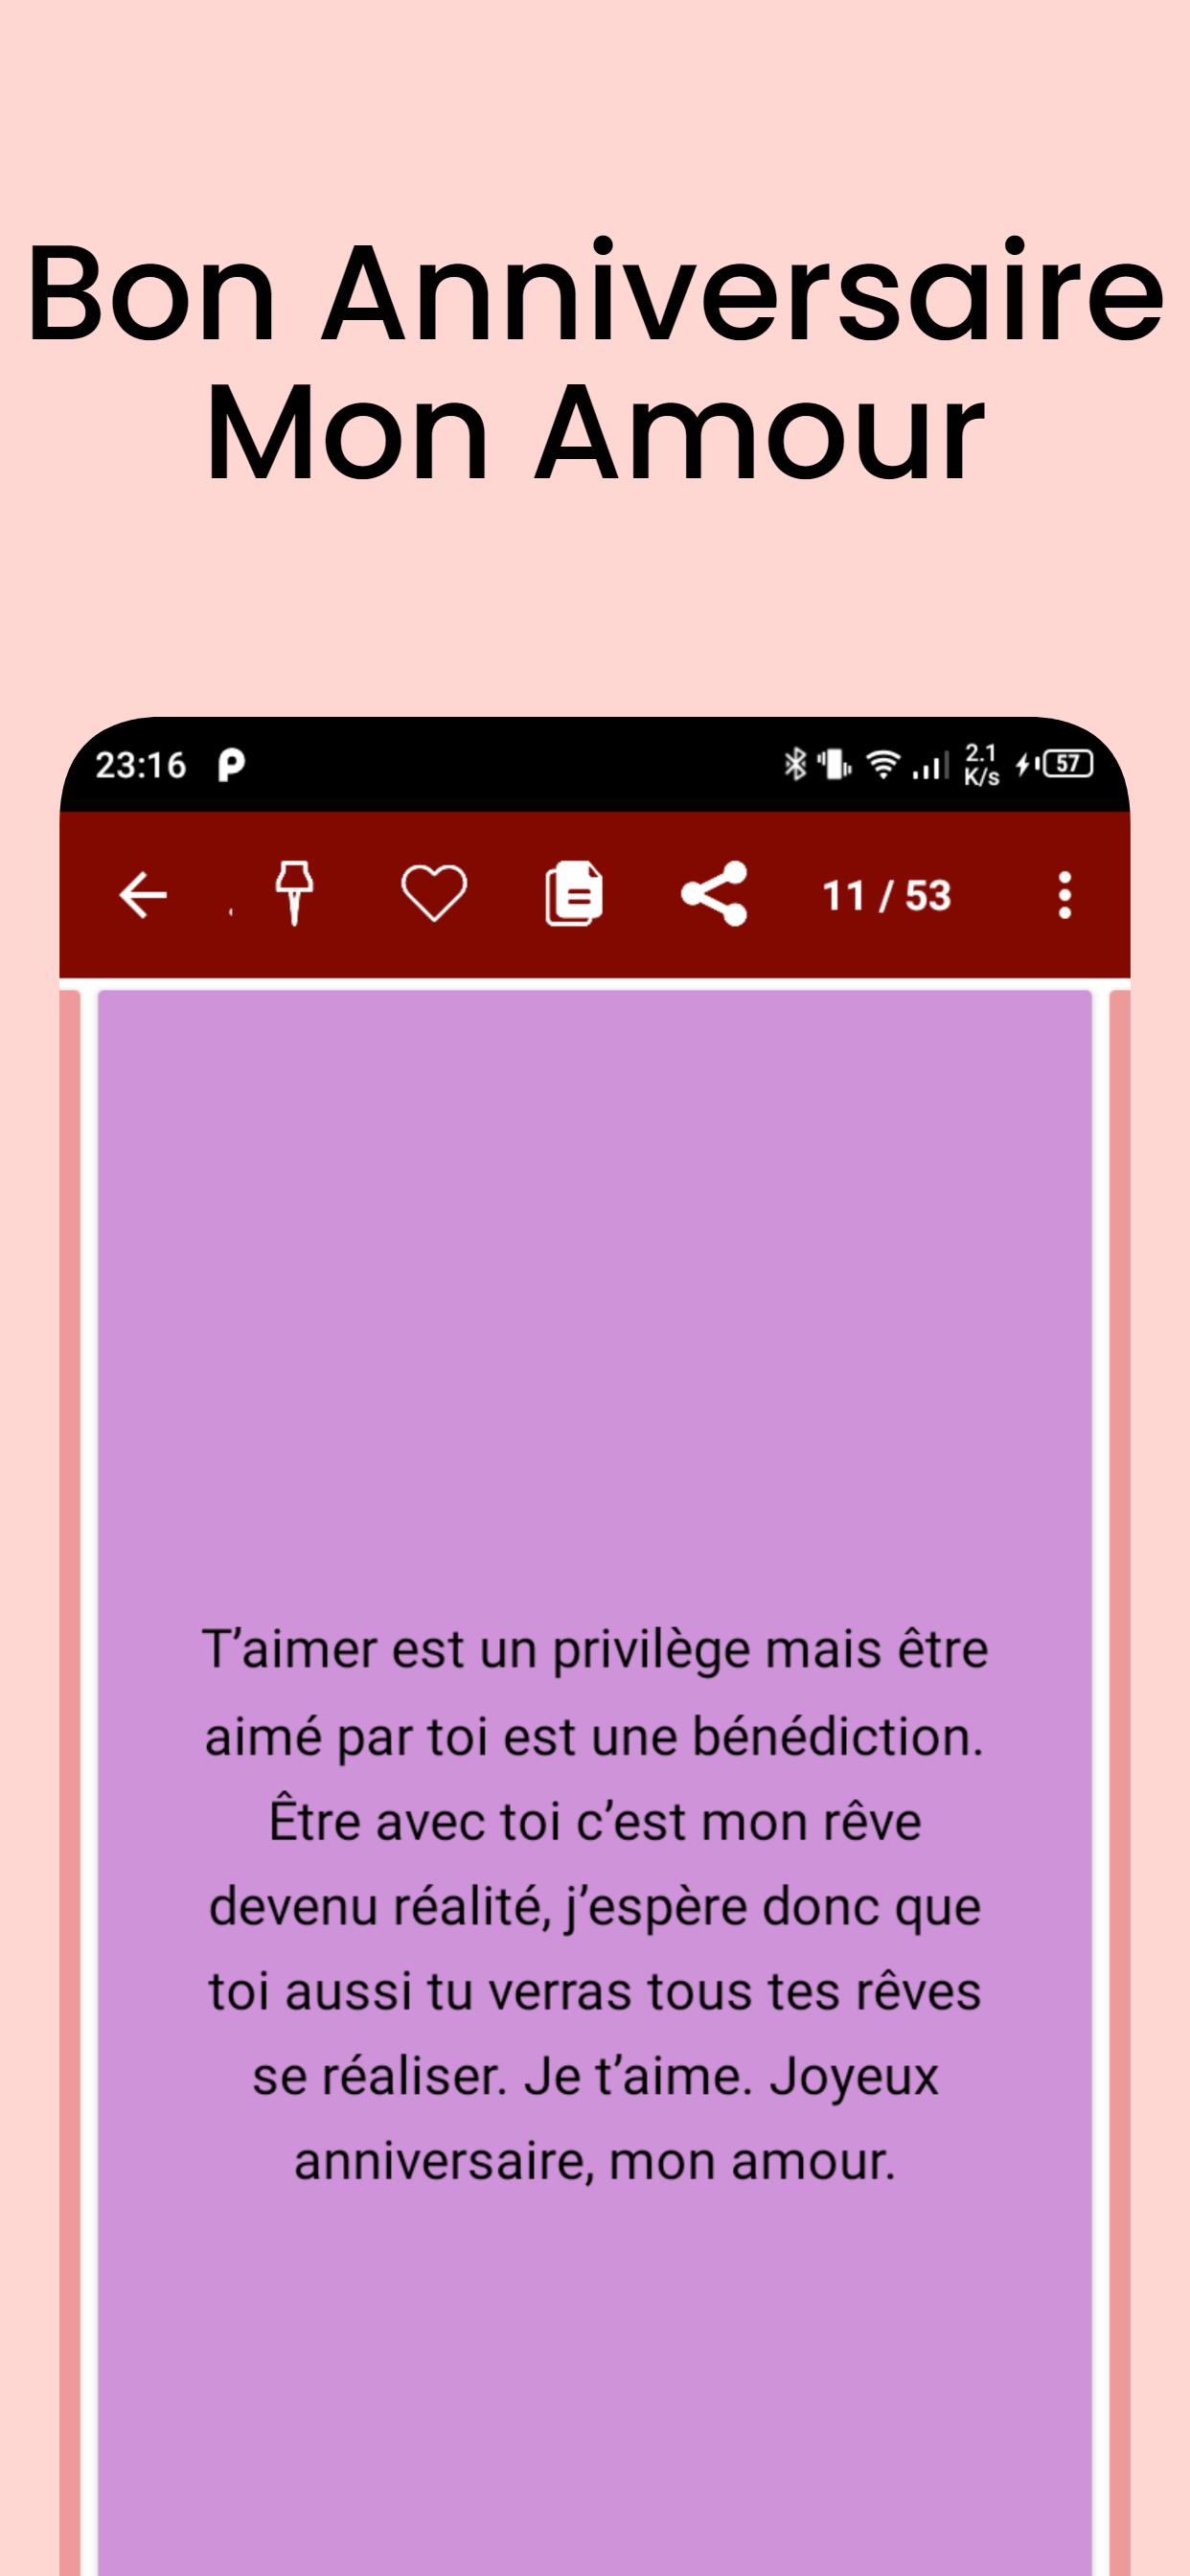 Bon Anniversaire Mon Amour Android क ल ए Apk ड उनल ड कर